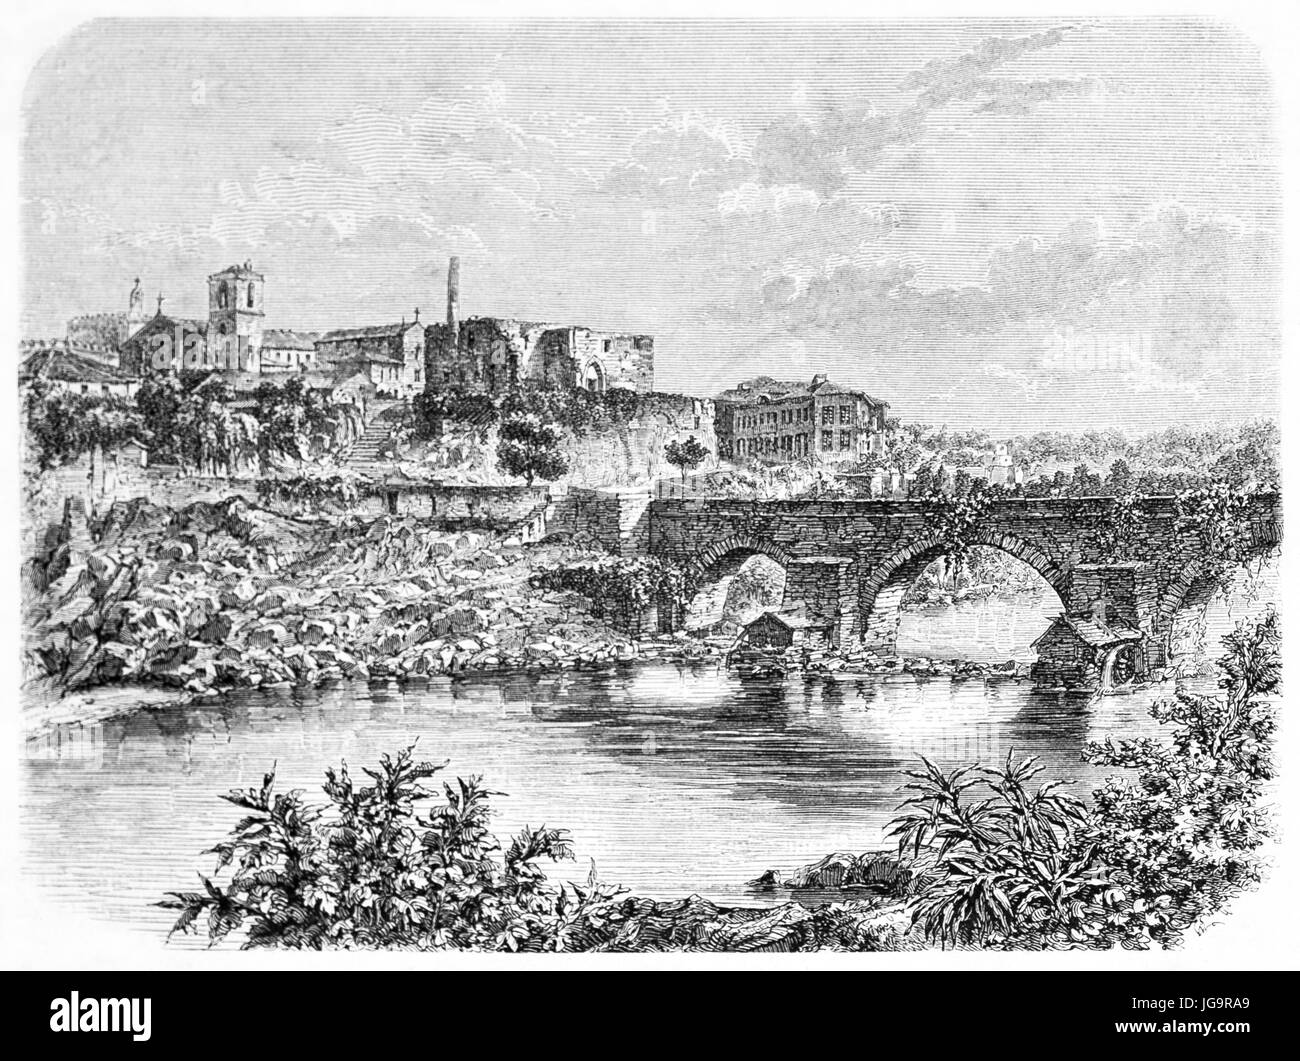 Vecchio vista di Barcelos, il nord del Portogallo. Creato da Catenacci dopo foto di scabra, pubblicato in Le Tour du Monde, Parigi, 1861 Foto Stock